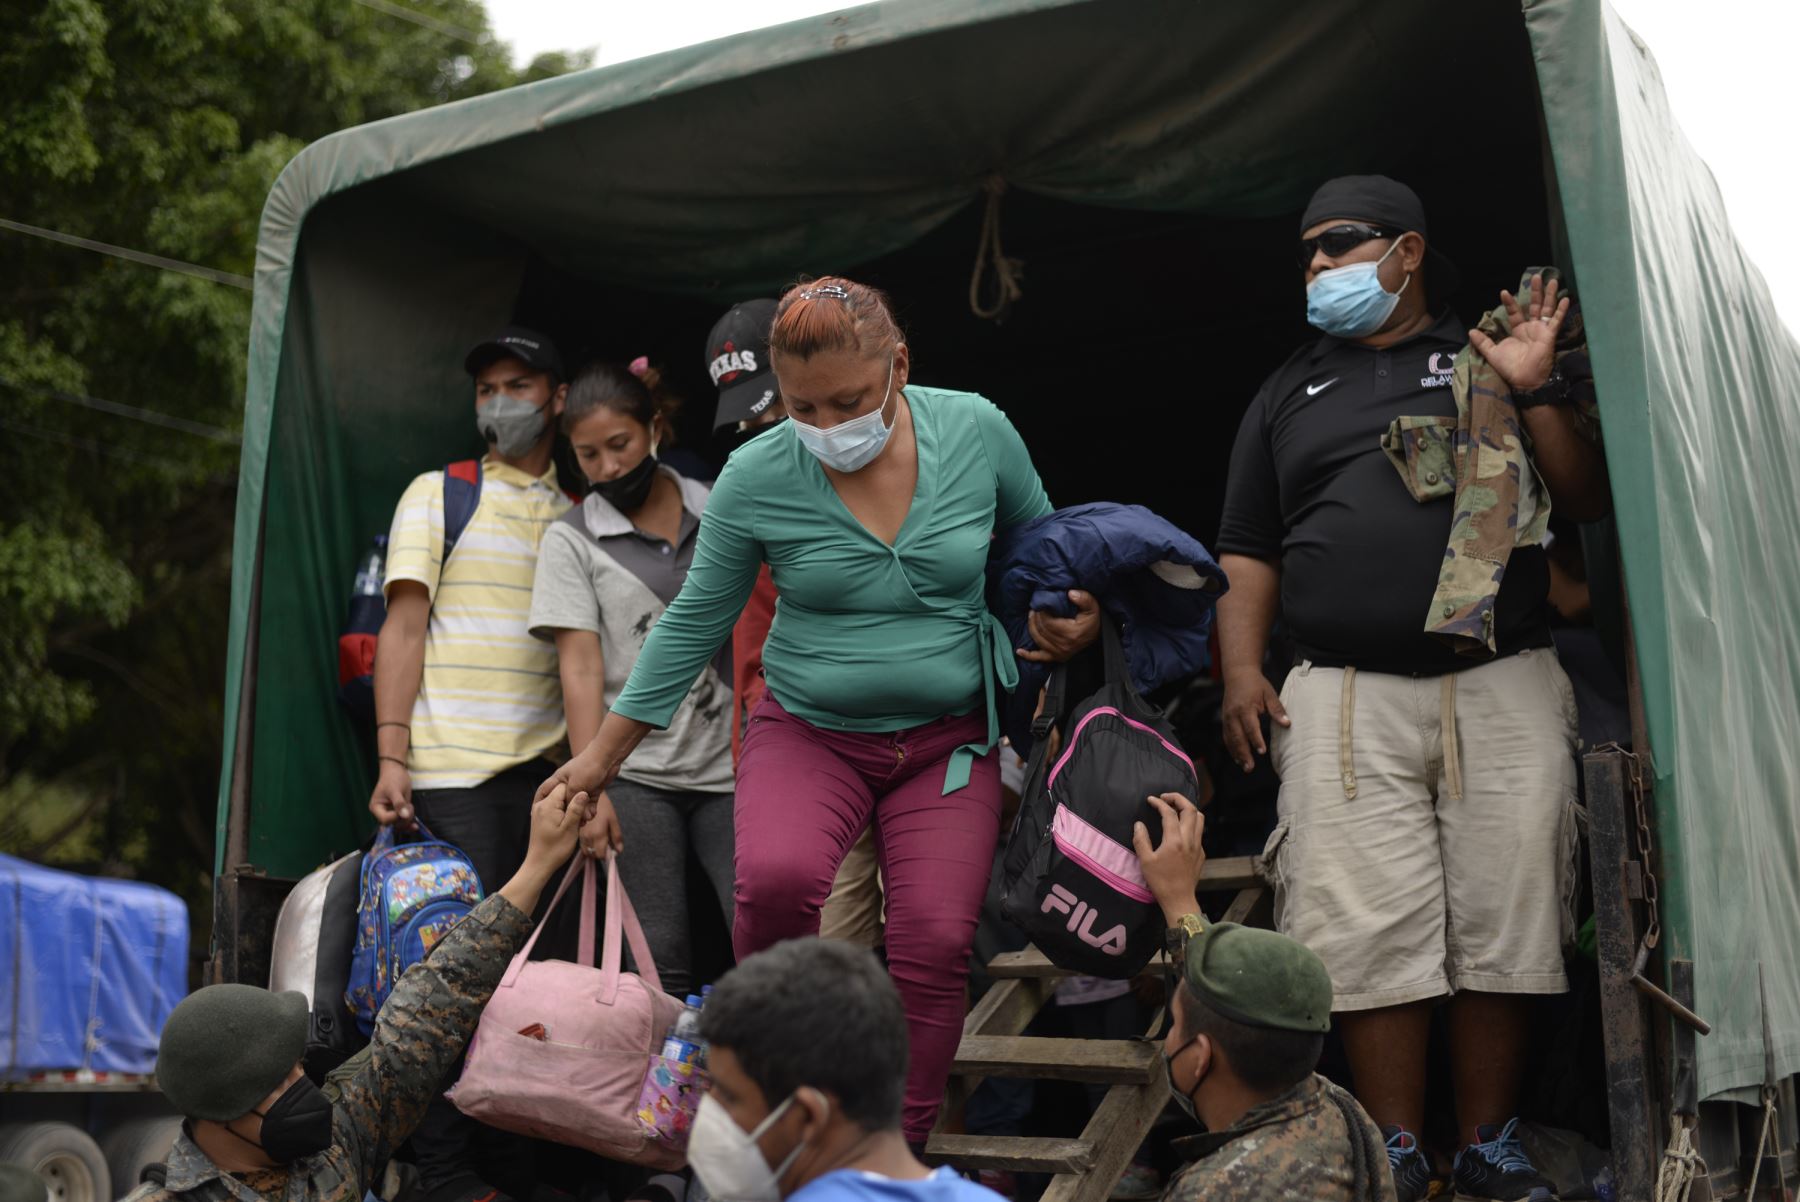 Los migrantes hondureños que regresan voluntariamente a Honduras son ayudados por soldados cuando bajan de un camión del ejército en El Florido, Chiquimula, Guatemala. Foto: AFP